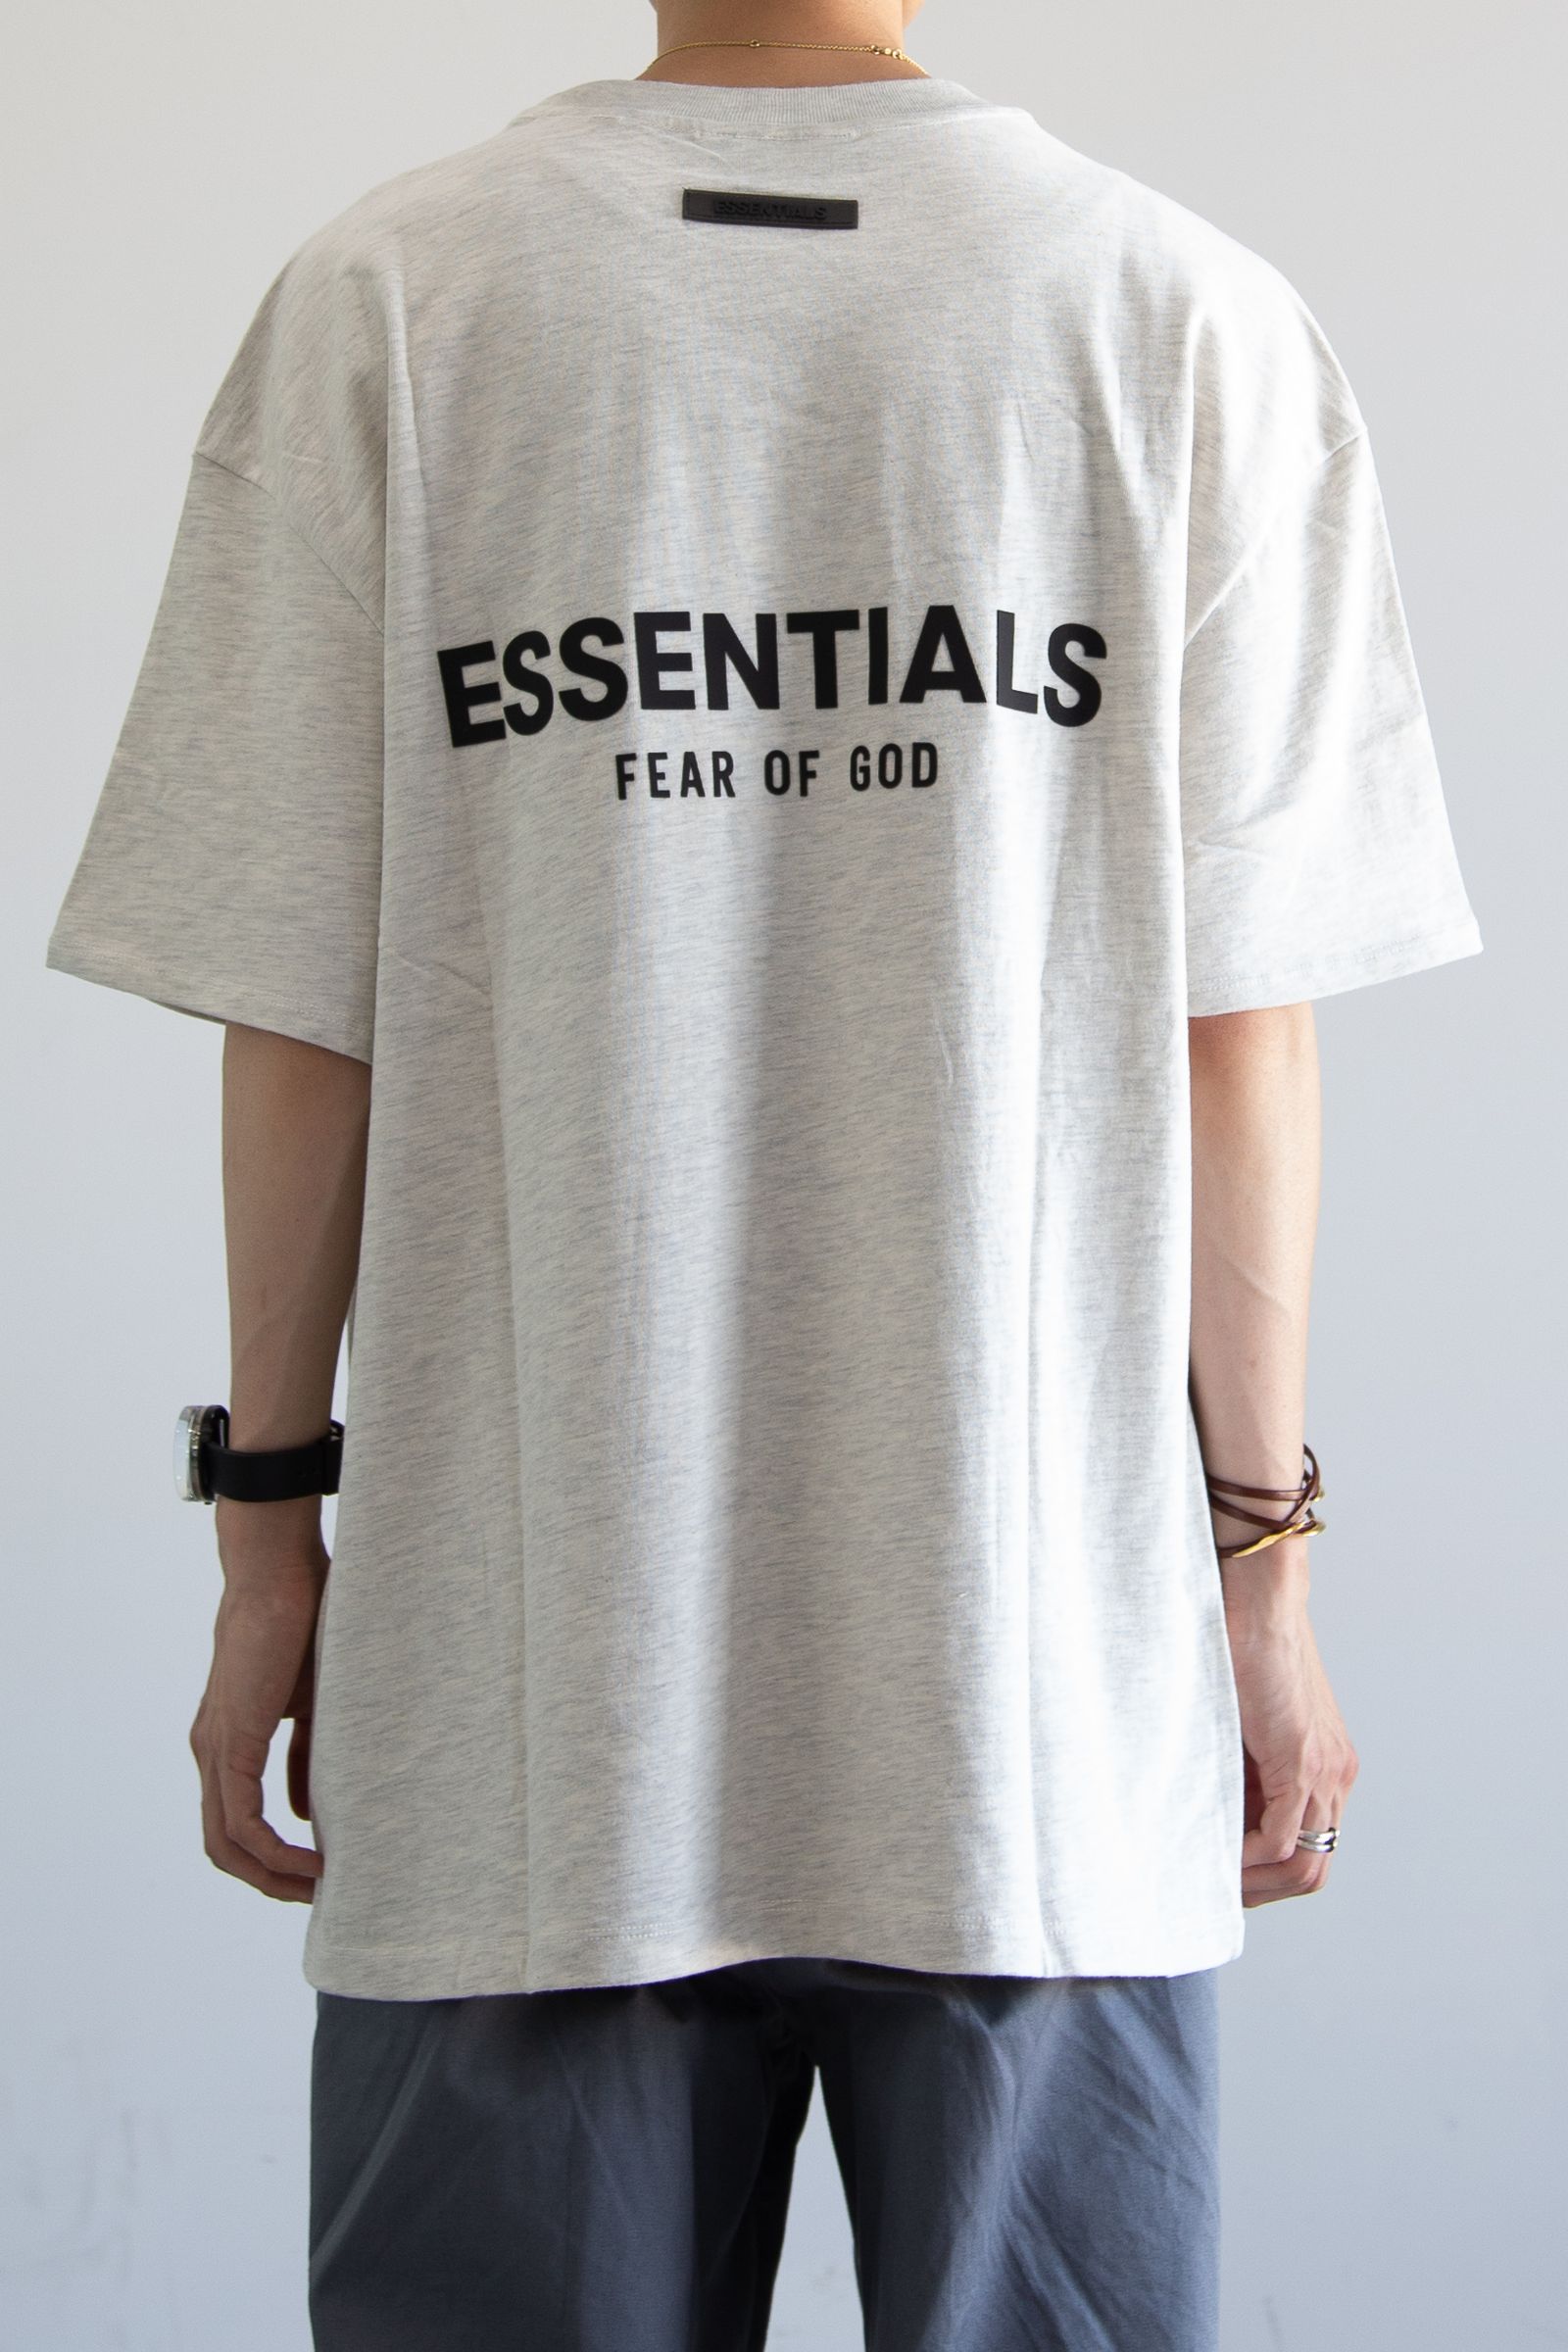 FOG ESSENTIALS Tシャツ グレー Mサイズ 21SS - Tシャツ/カットソー 